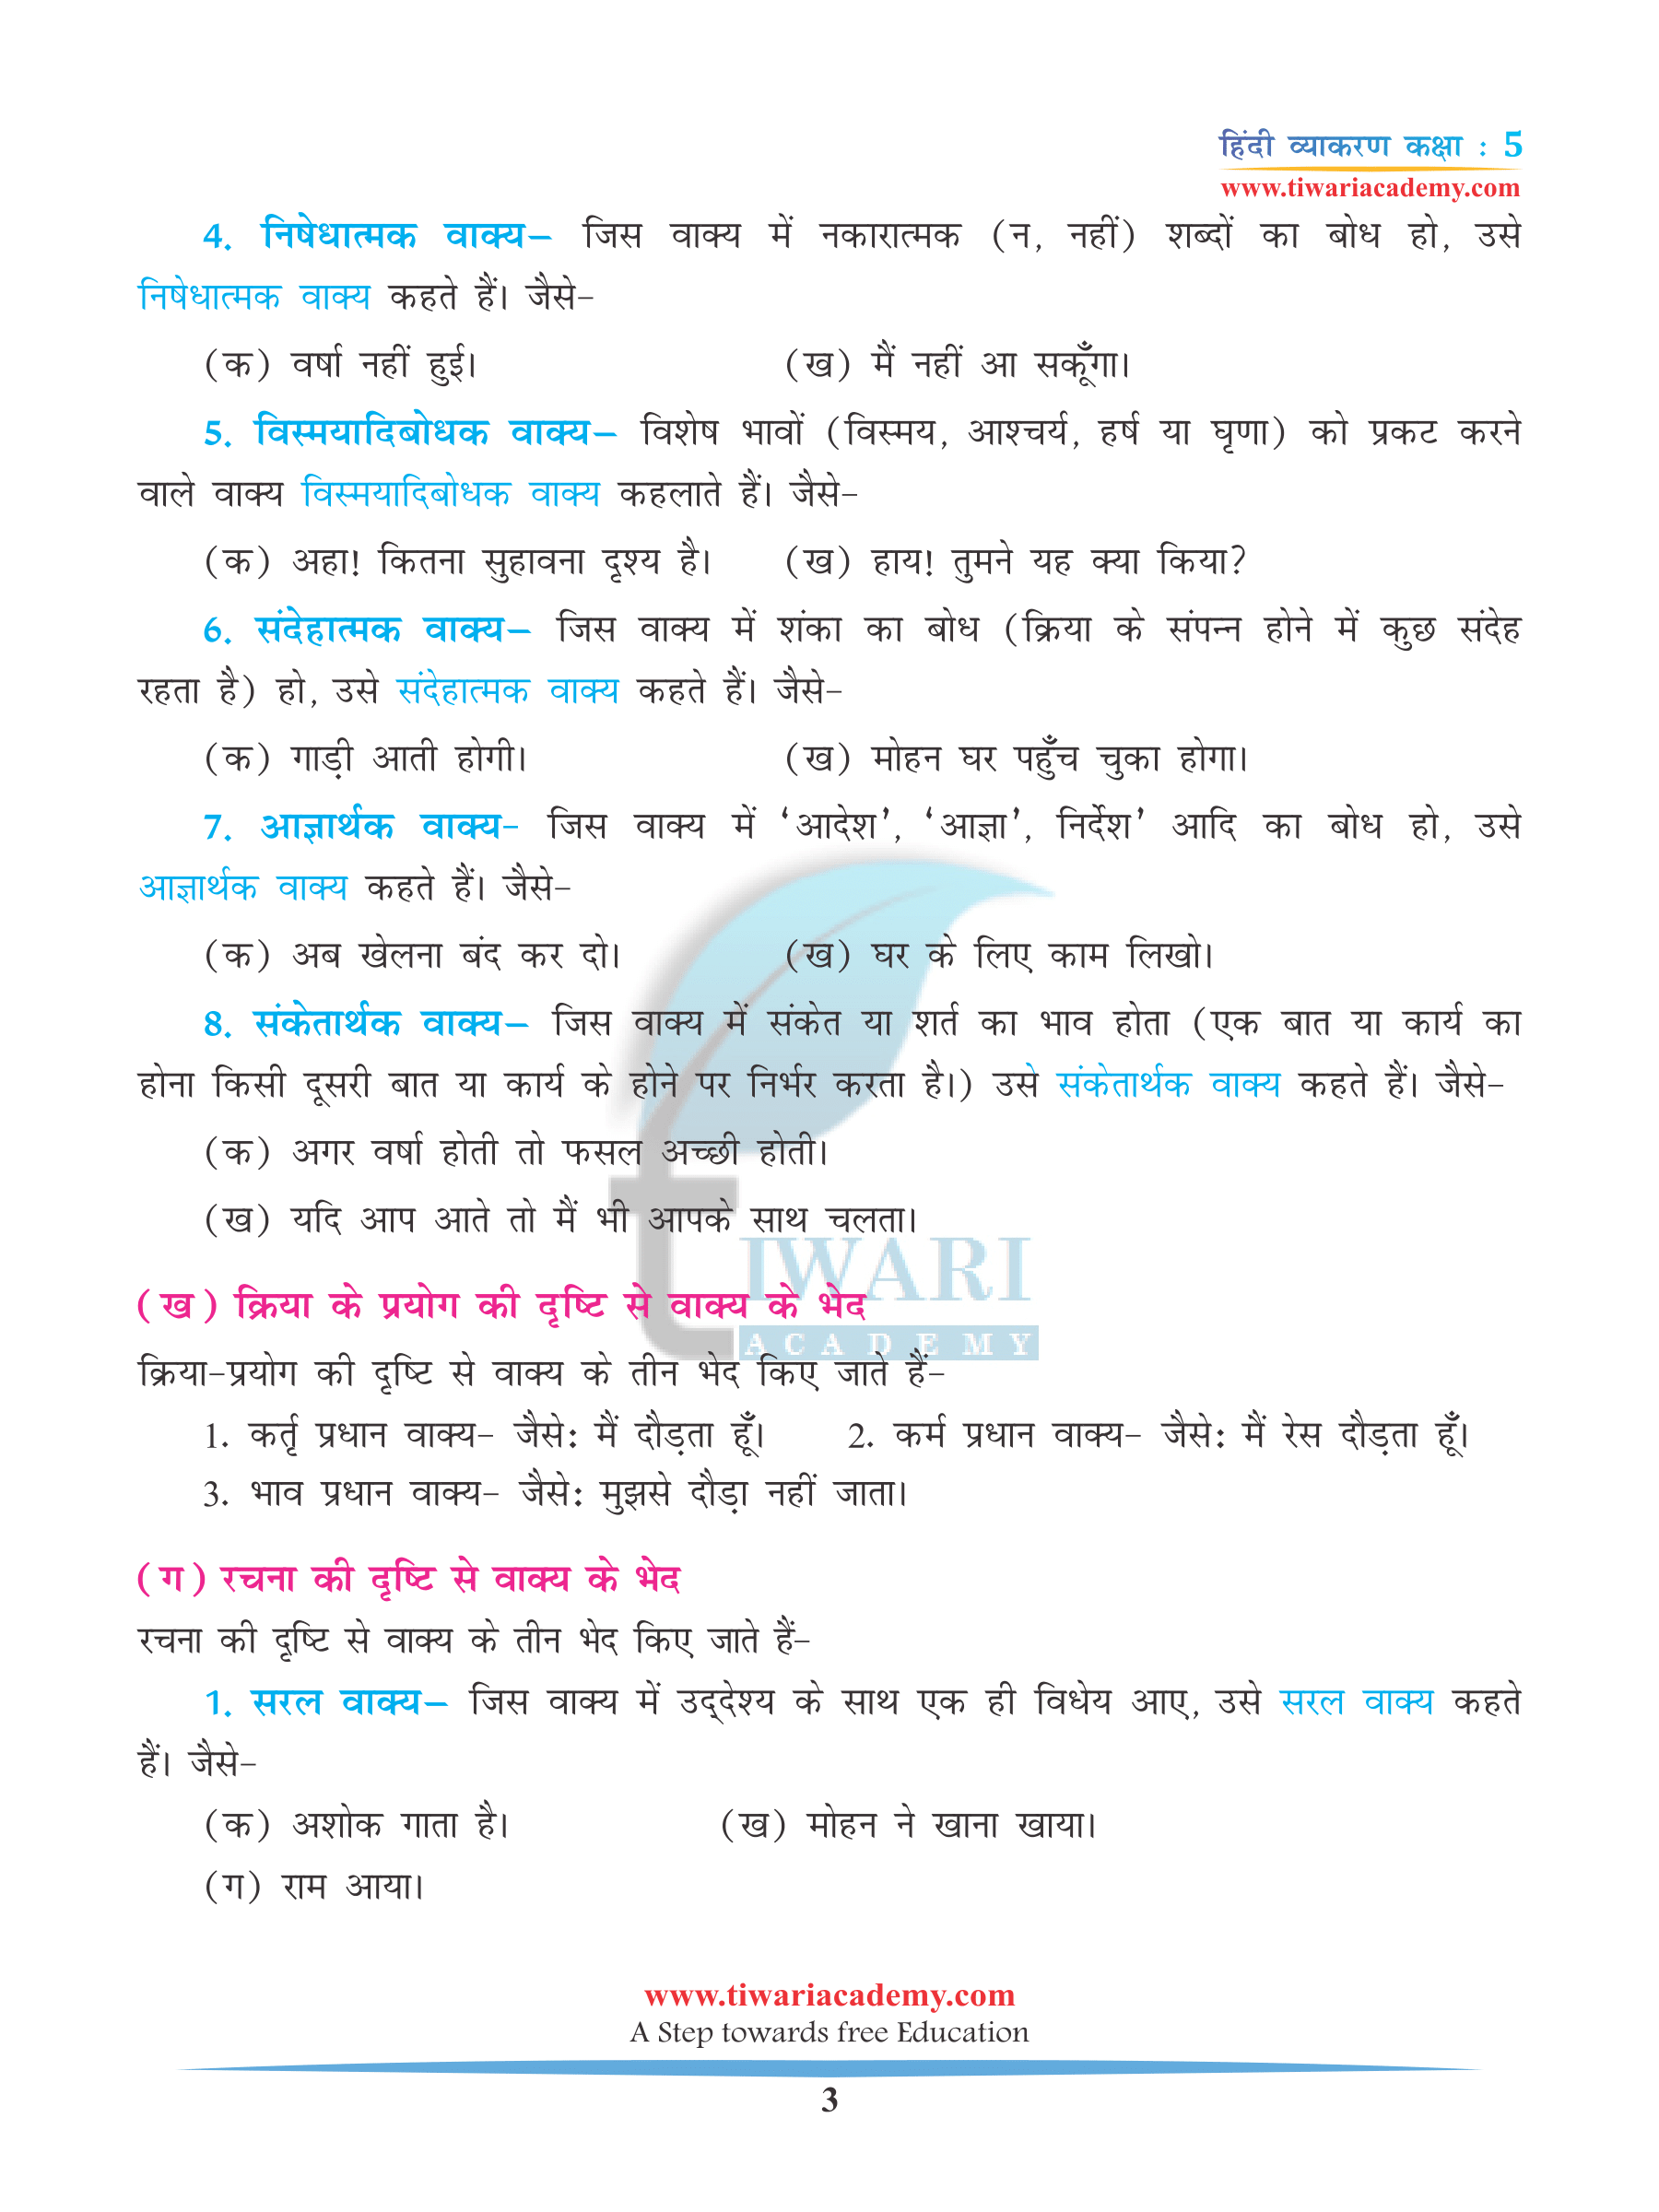 NCERT Class 5 Hindi Grammar Chapter 11 Solutions